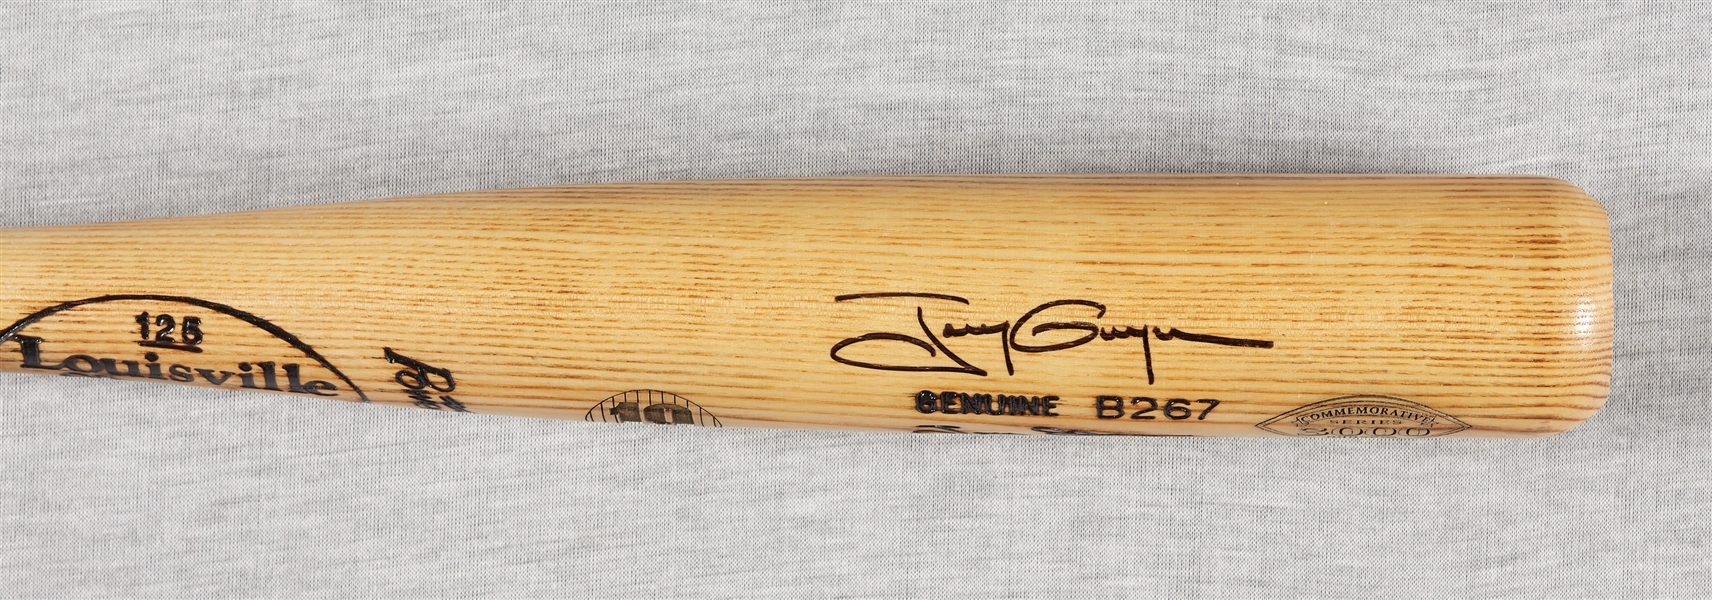 Tony Gwynn Signed Louisville Slugger Bat (BAS)